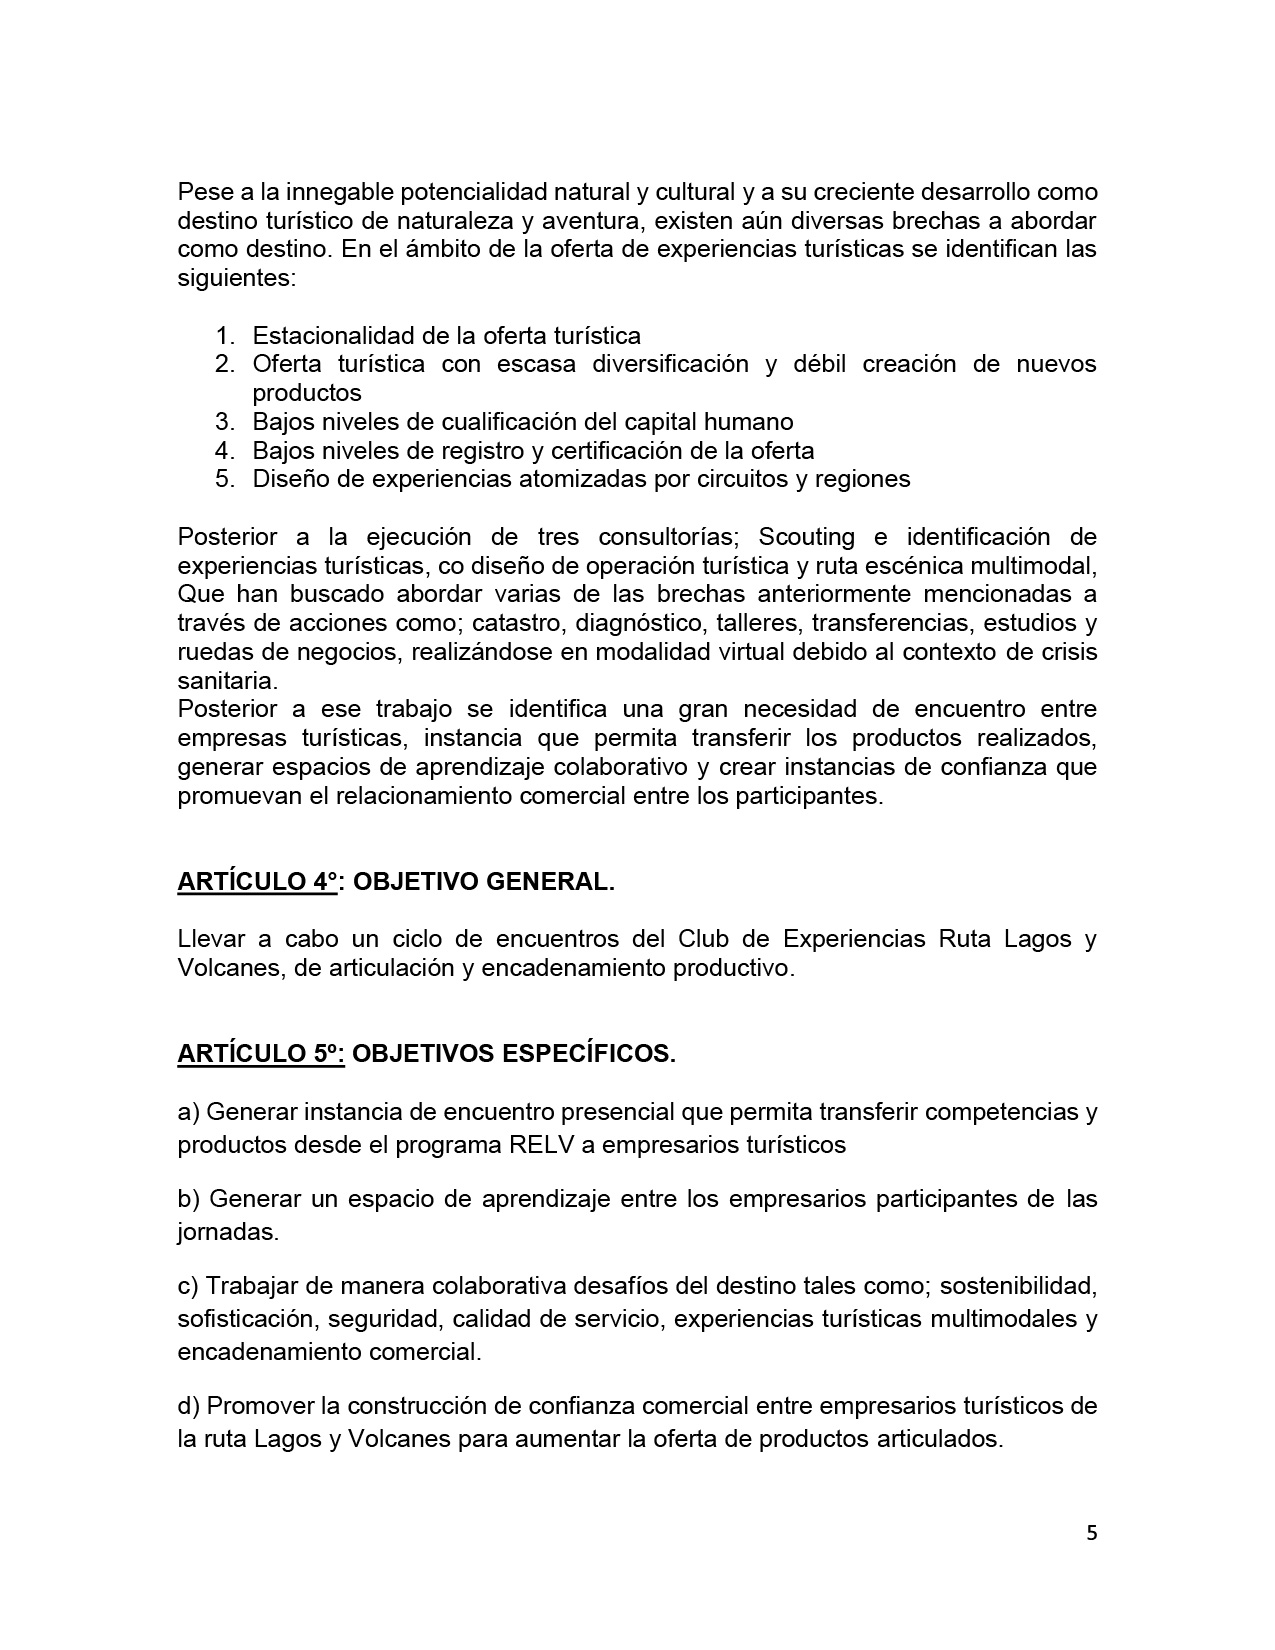 TDR Consultoría Empresas Puertas Abiertas V3-05